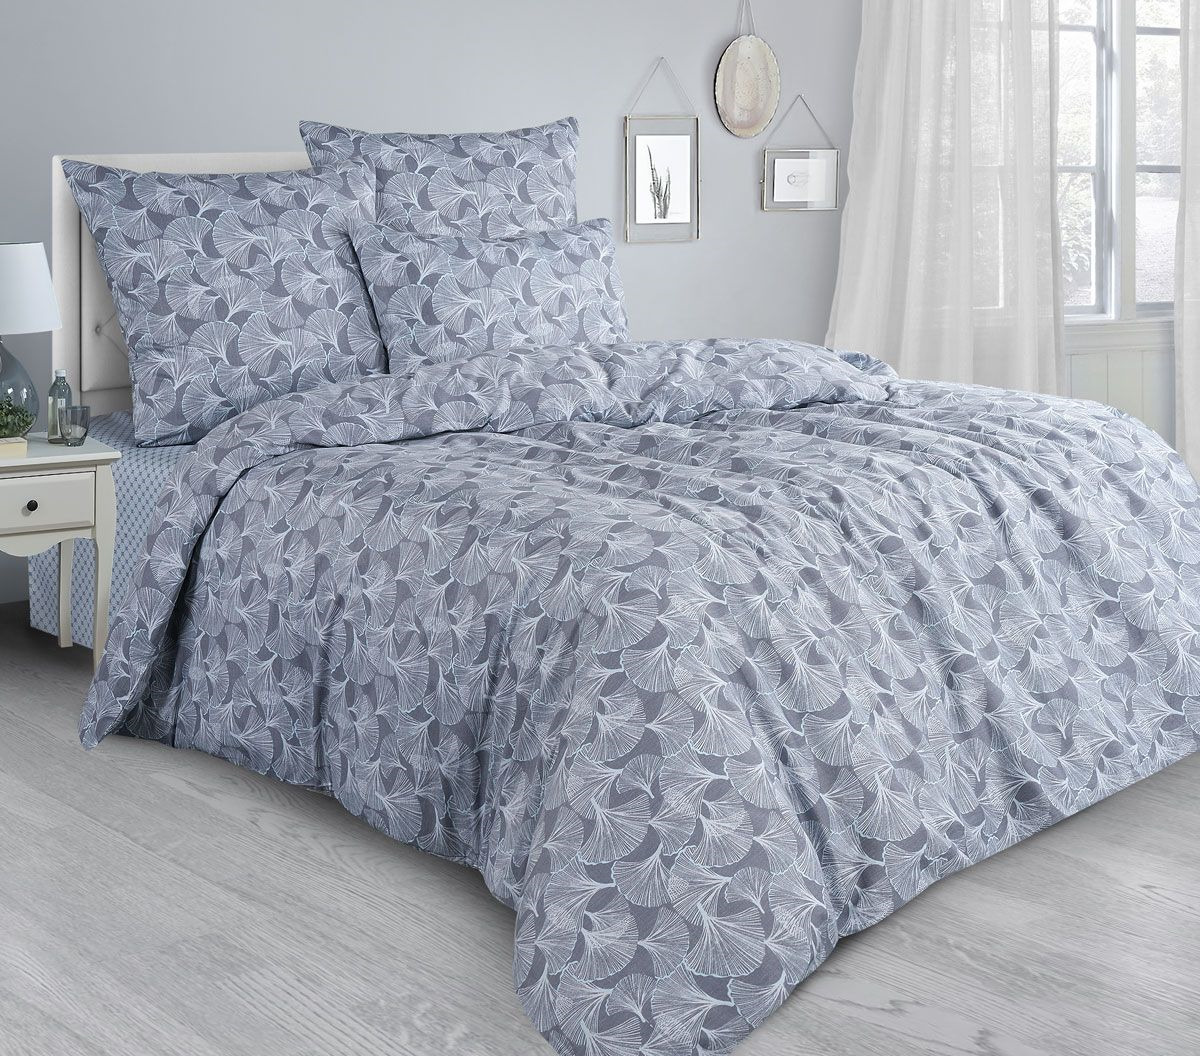 Комплект постельного белья Guten Morgen Premium Whisper, GMS-867-143-150-70, 1,5-спальный, наволочки 70x70, синий, темно-синий